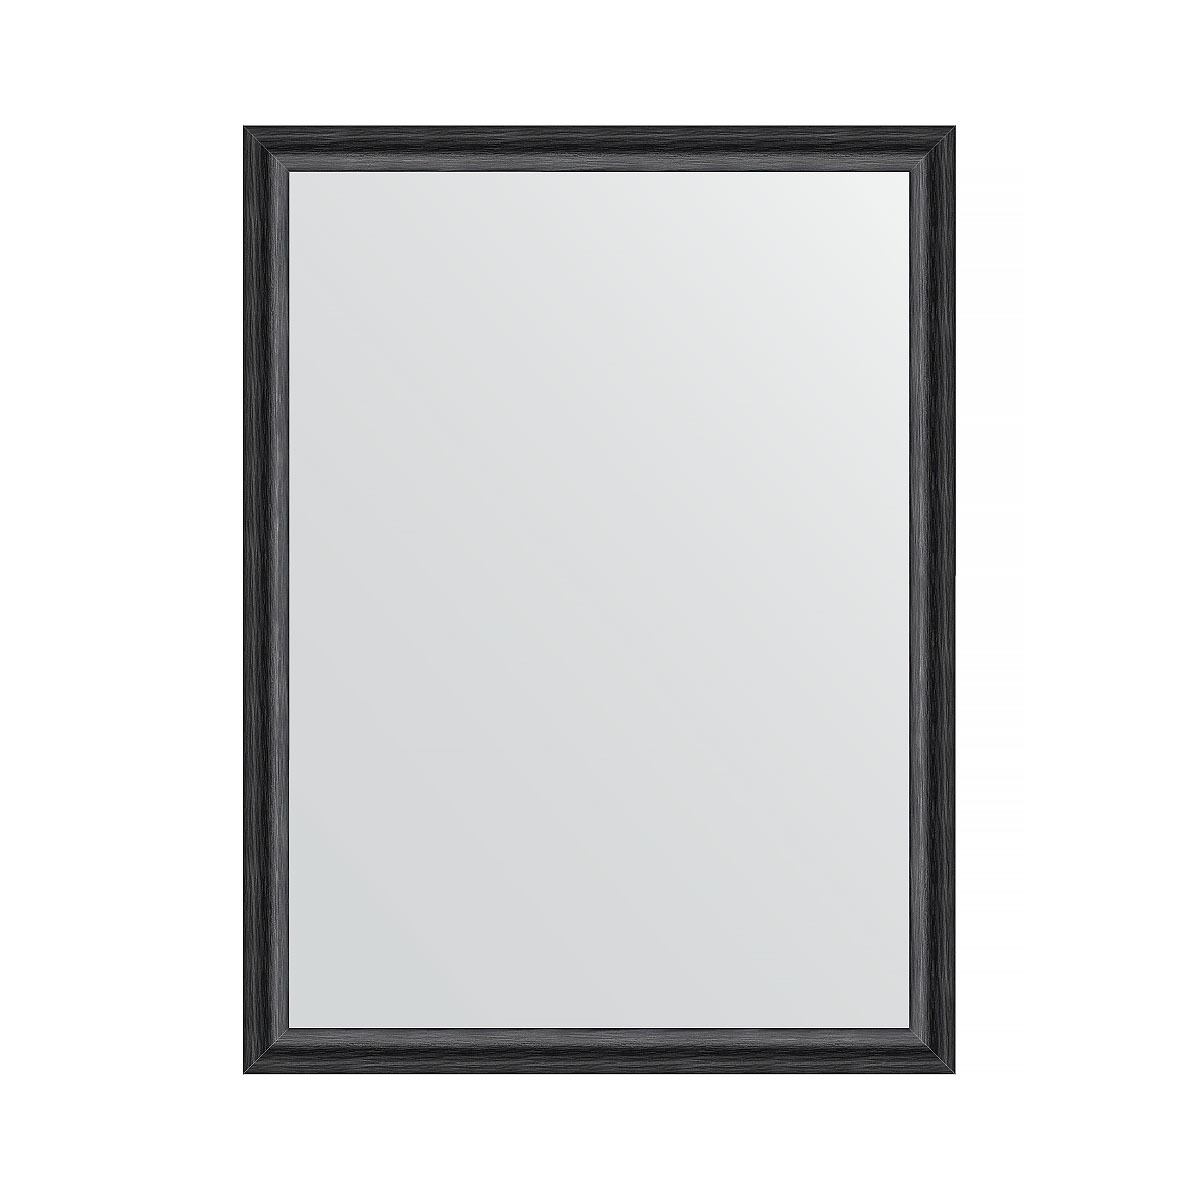 Зеркало в багетной раме Evoform черный дуб 37 мм 60х80 см зеркало evoform в багетной раме 56х76см bx 1229